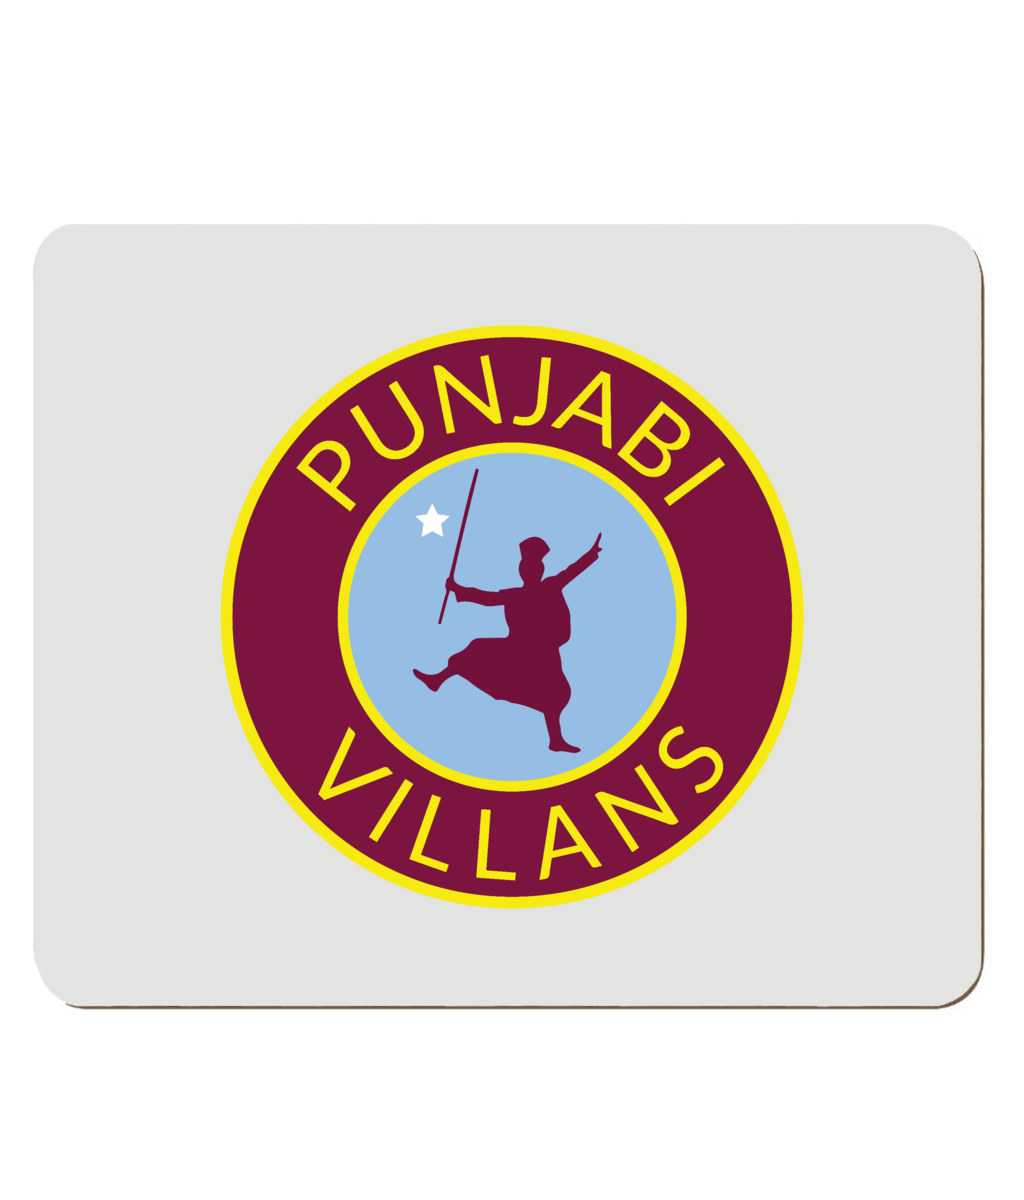 Punjabi Villans Hardboard Placemat